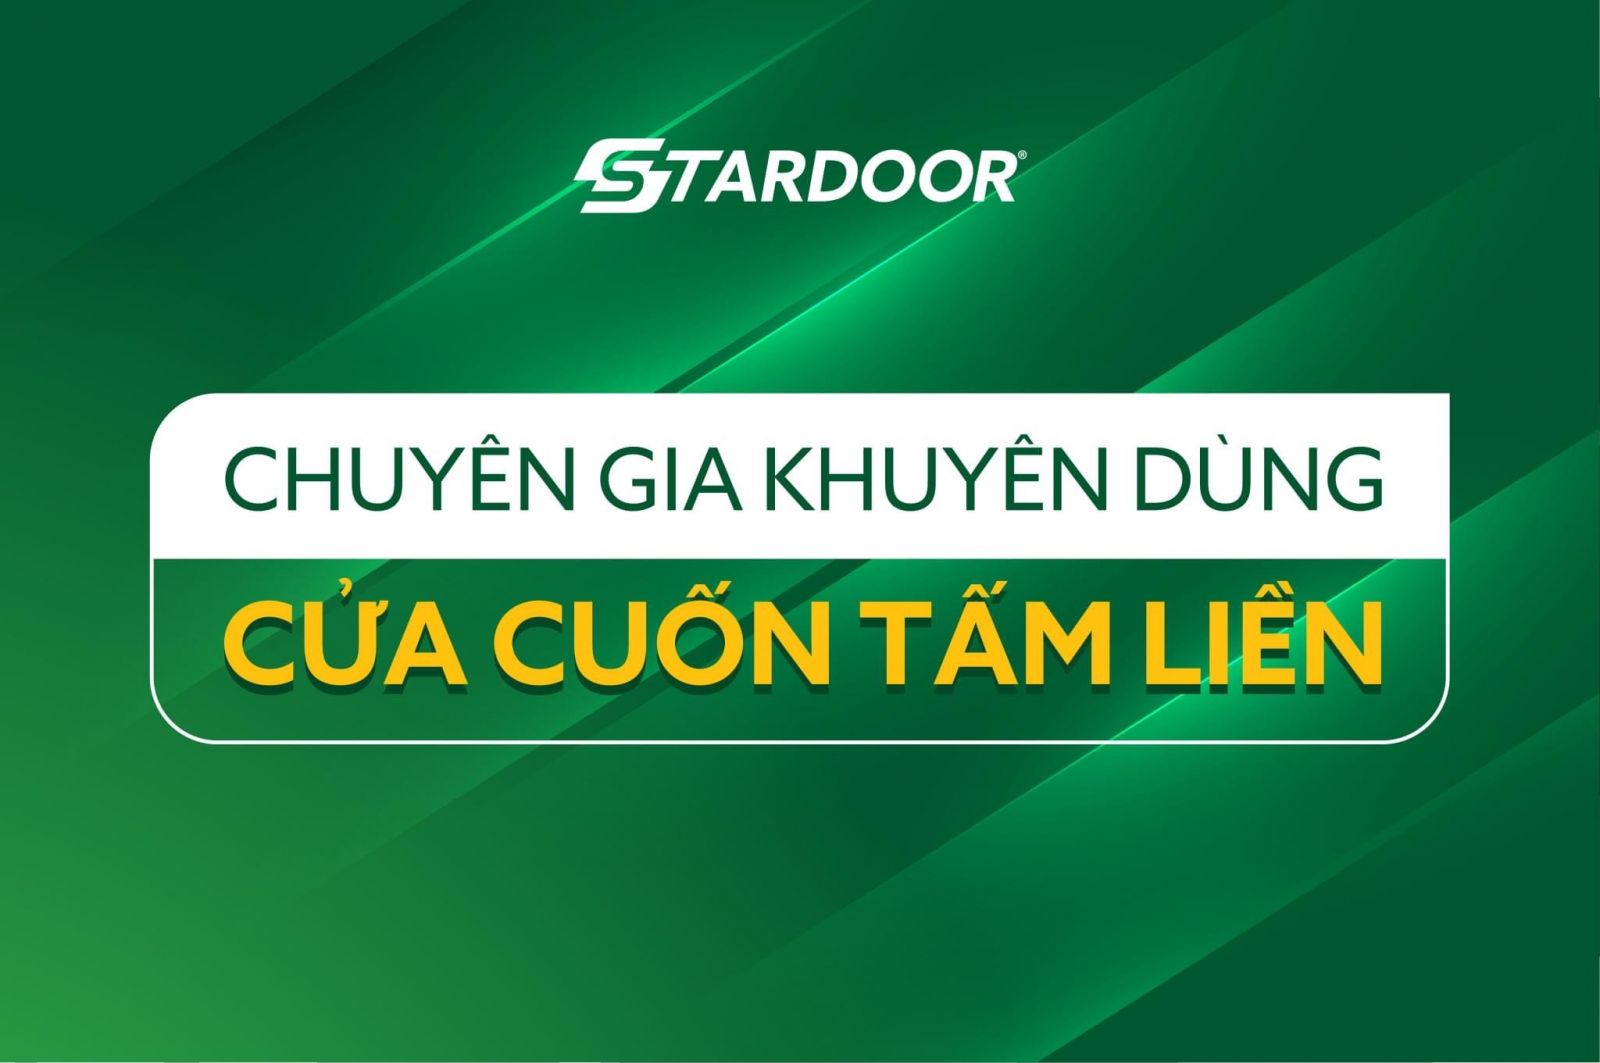 Lắp đặt cửa cuốn Stardoor tại Bình Thuận